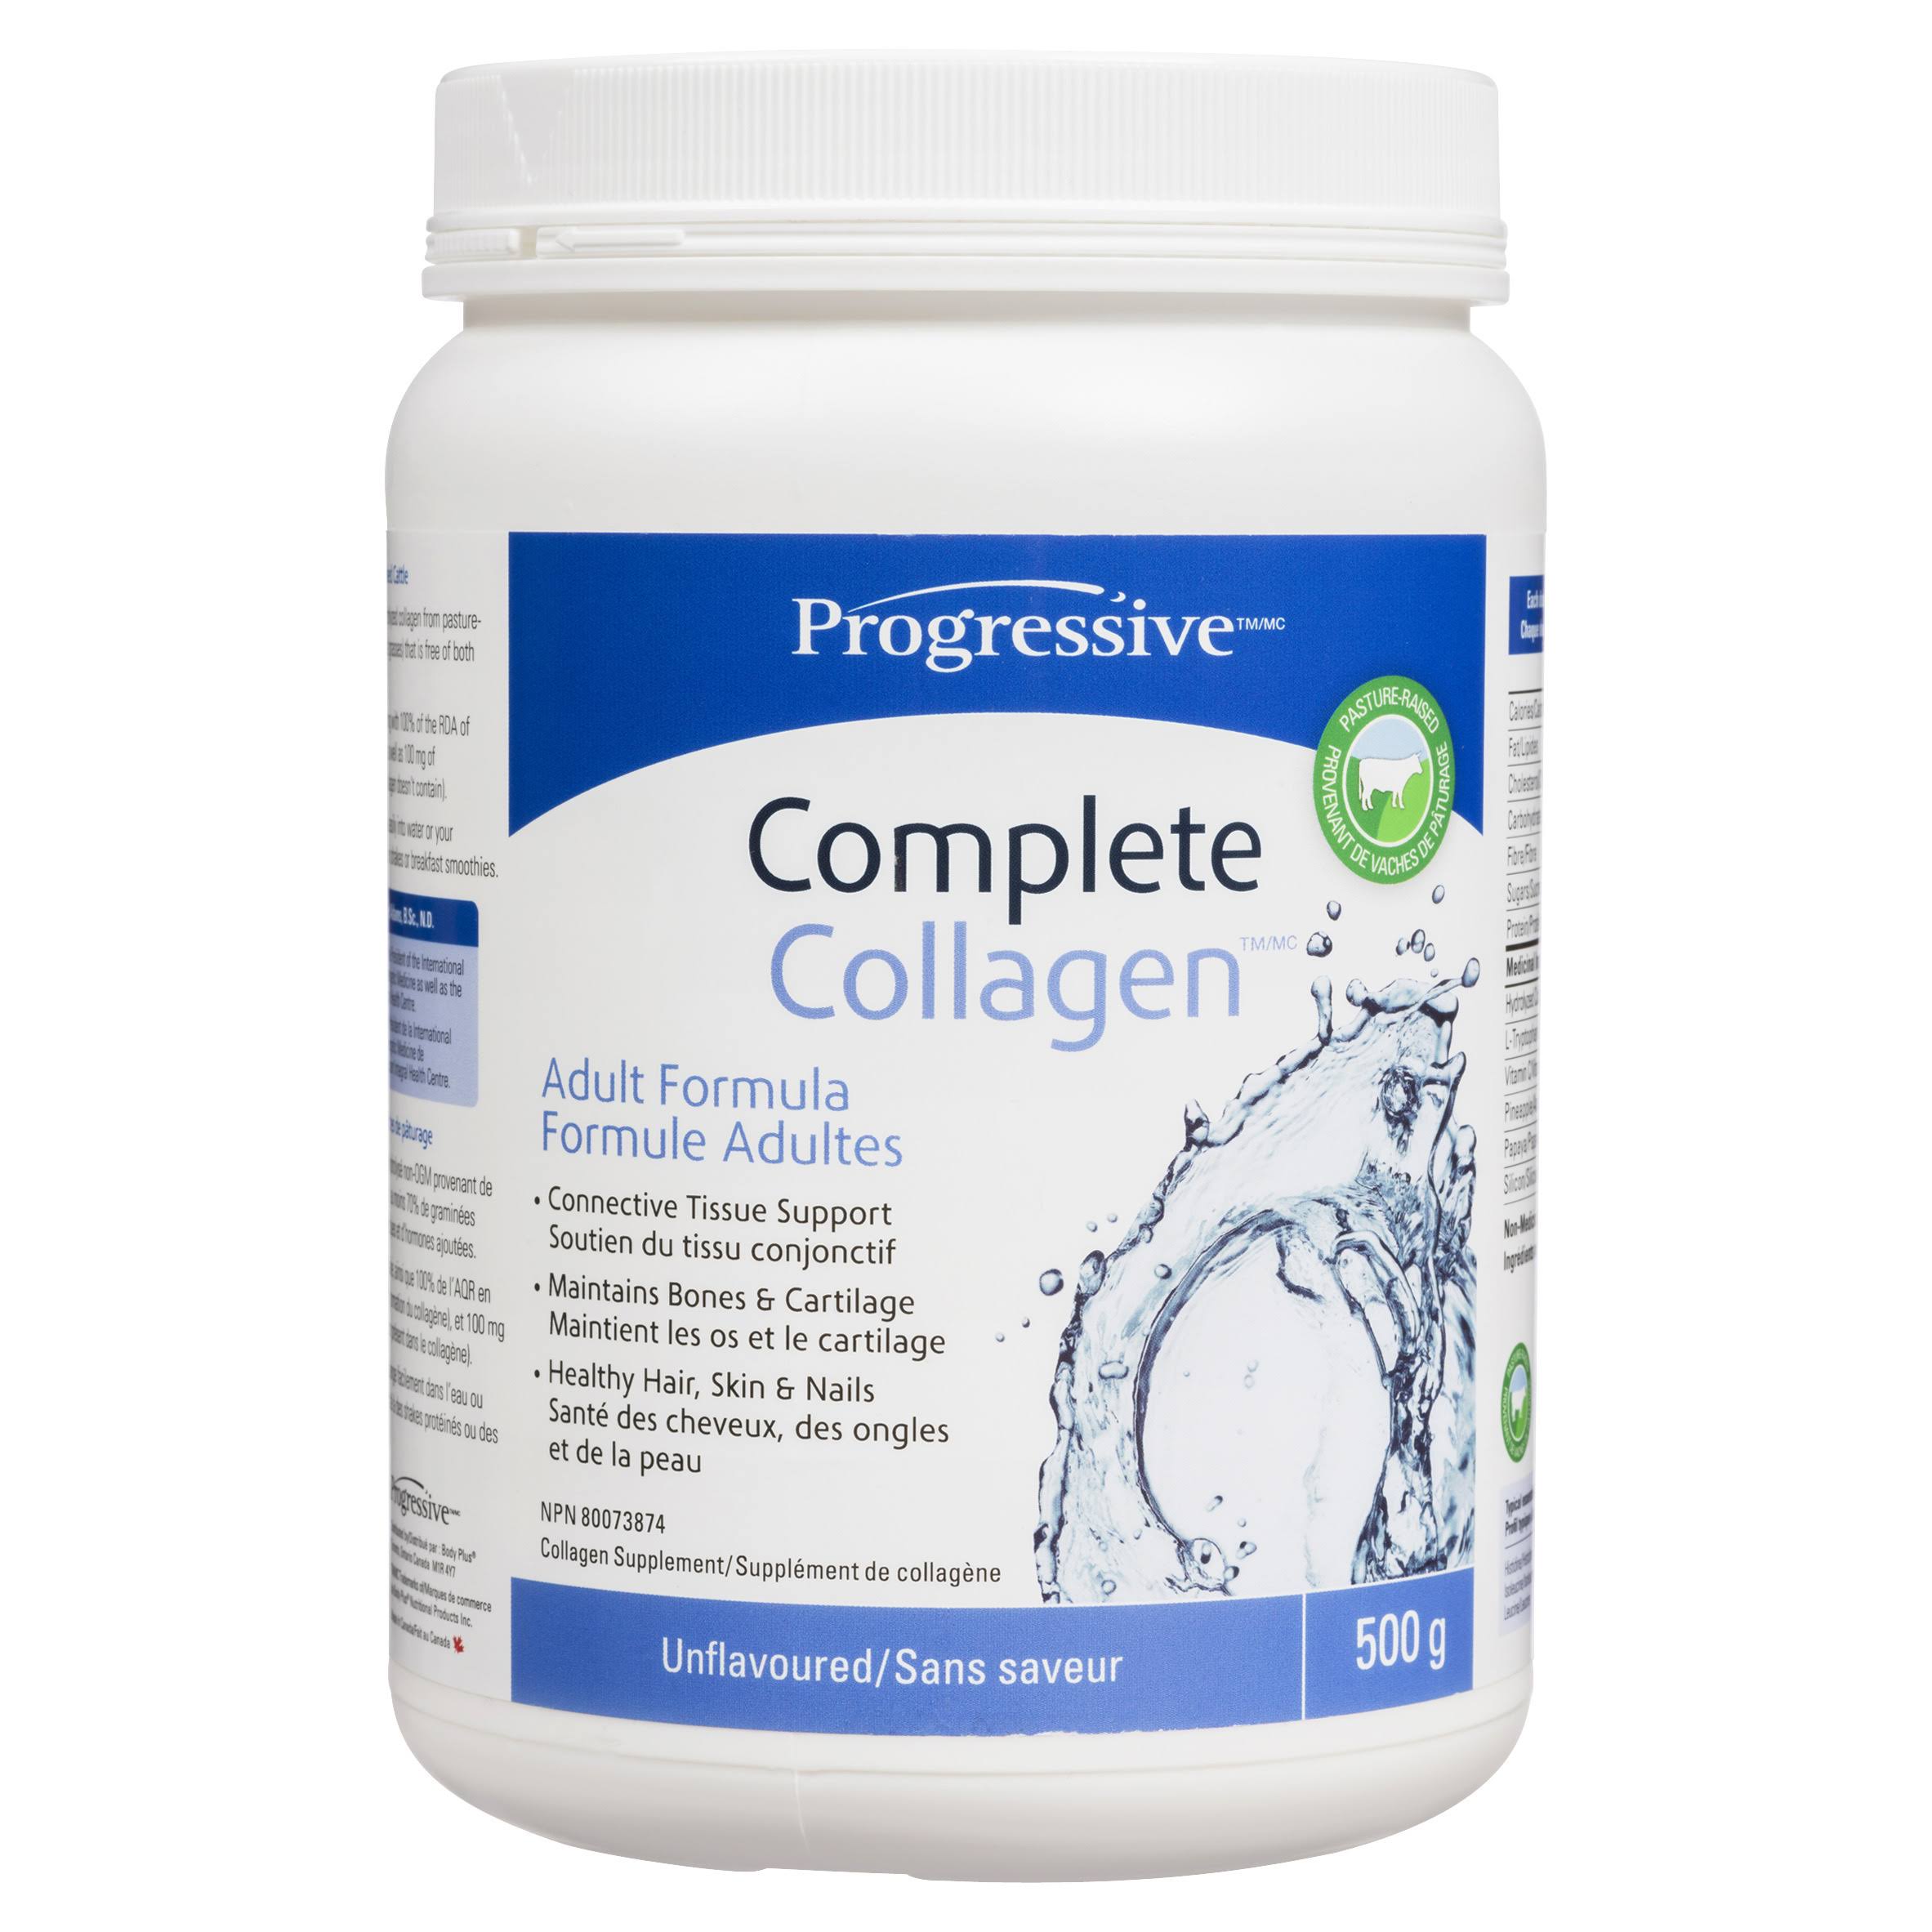 Progressive Compete Collagen - Unflavoured, 600g